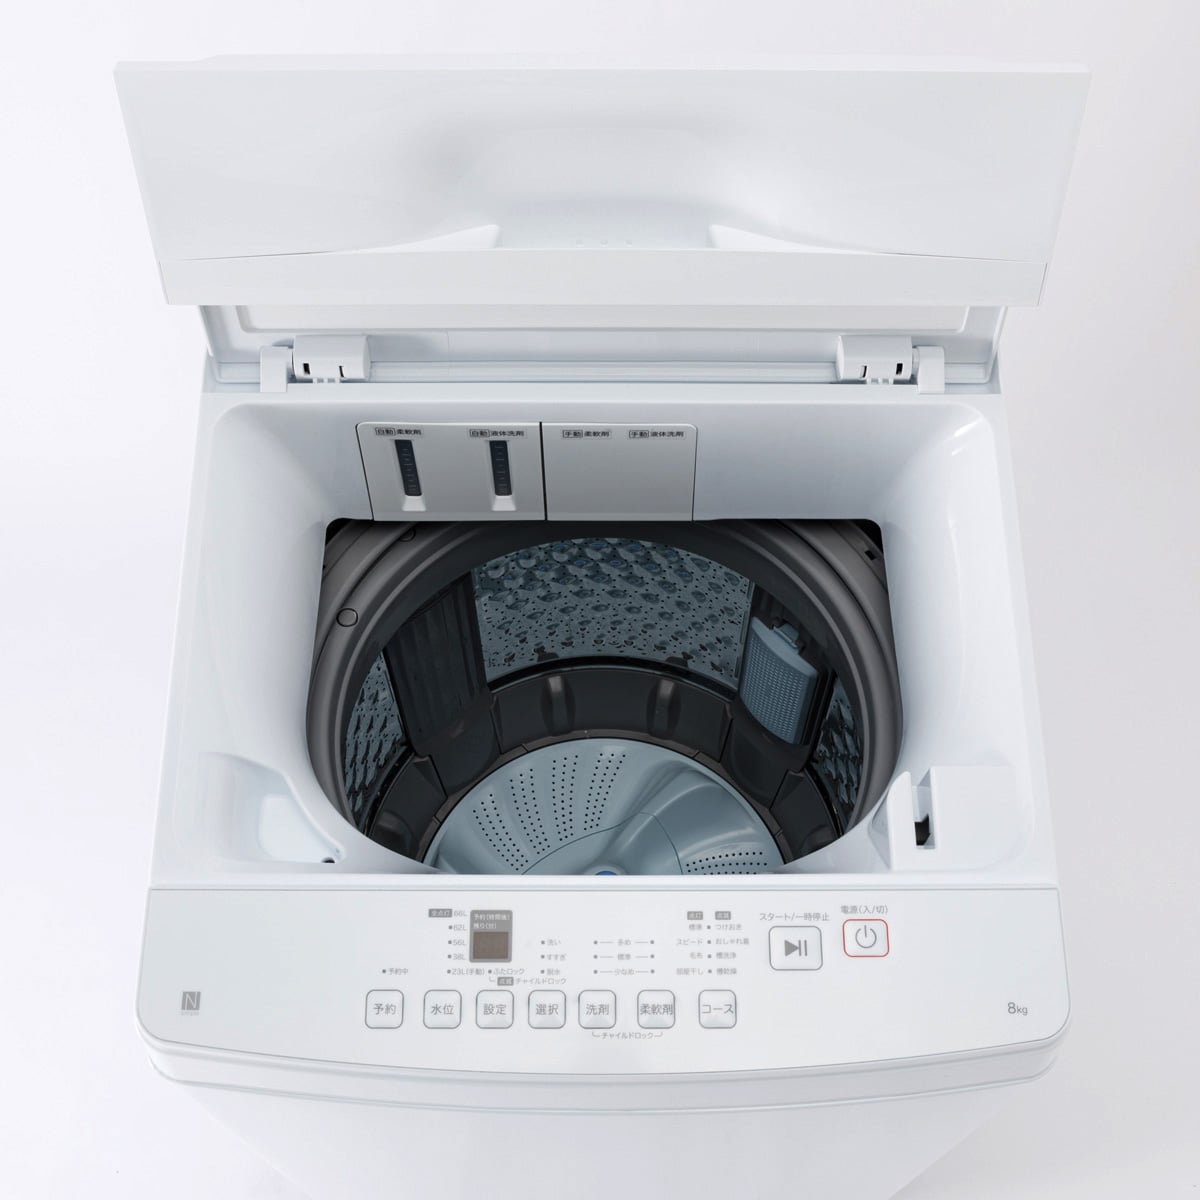 家電批評ベストバイ受賞】8kg洗剤自動投入洗濯機(NT80J1 ホワイト 